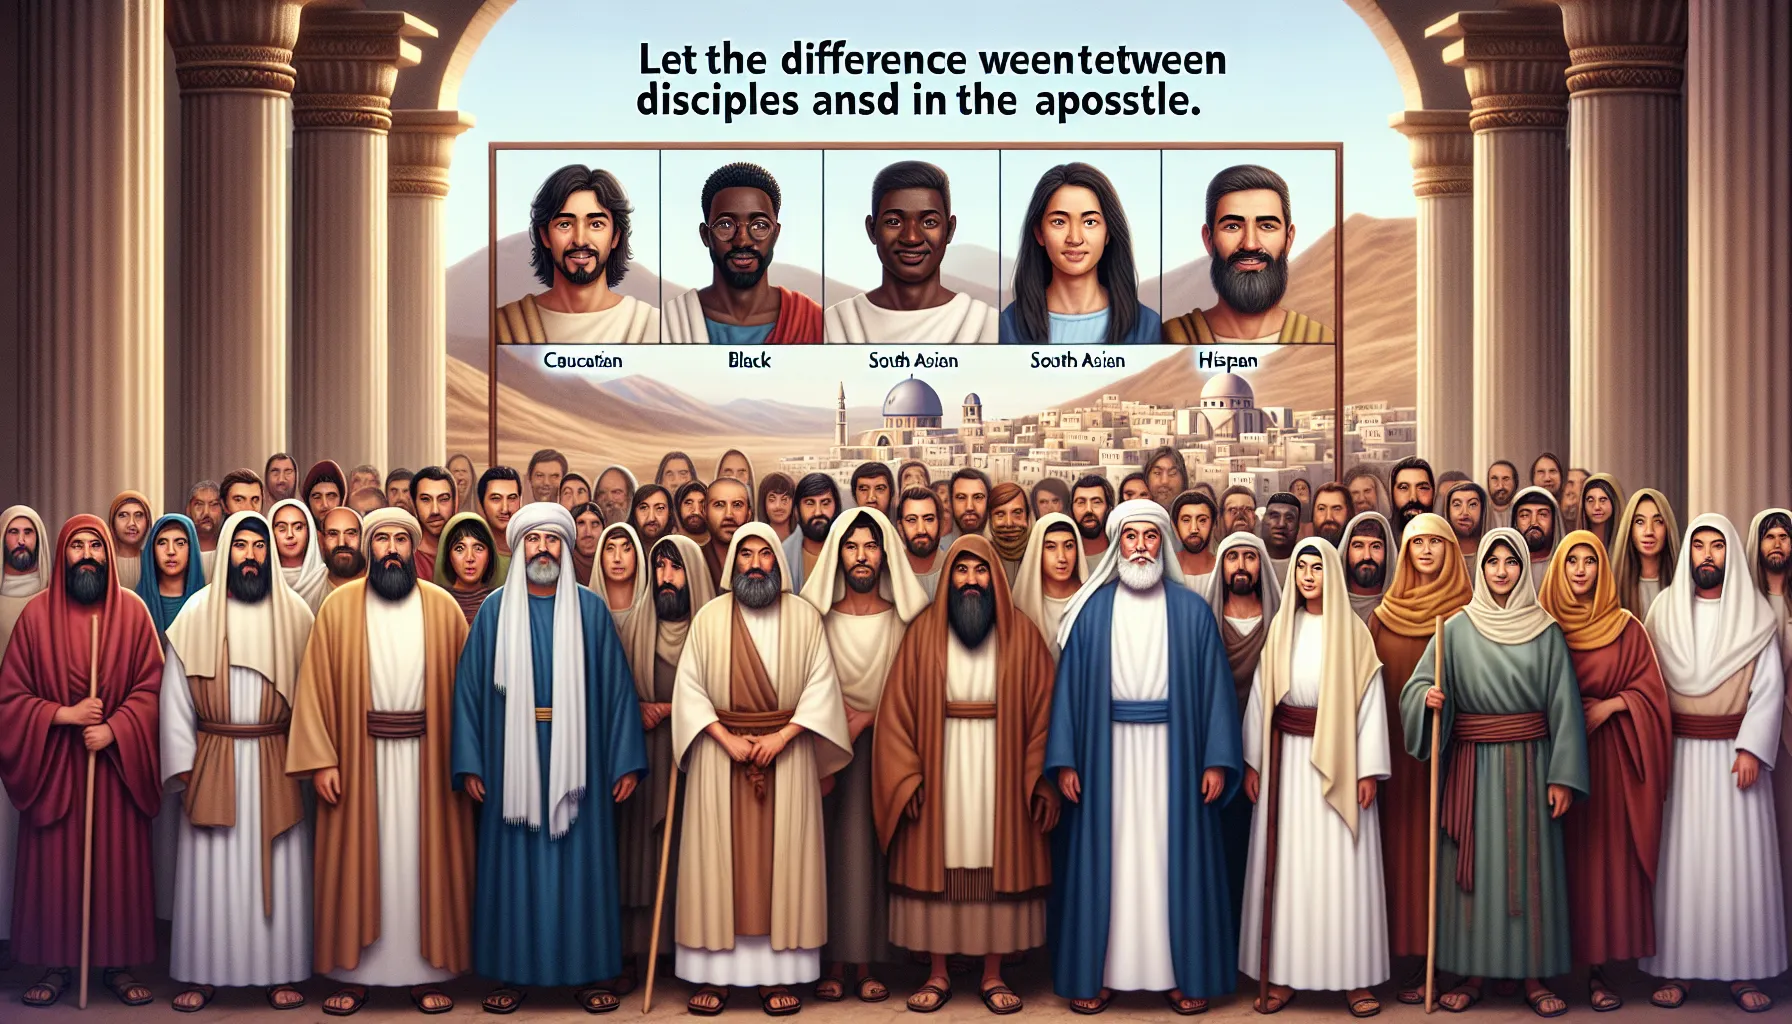 Imagen mostrando la diferencia entre discípulo y apóstol en la Biblia